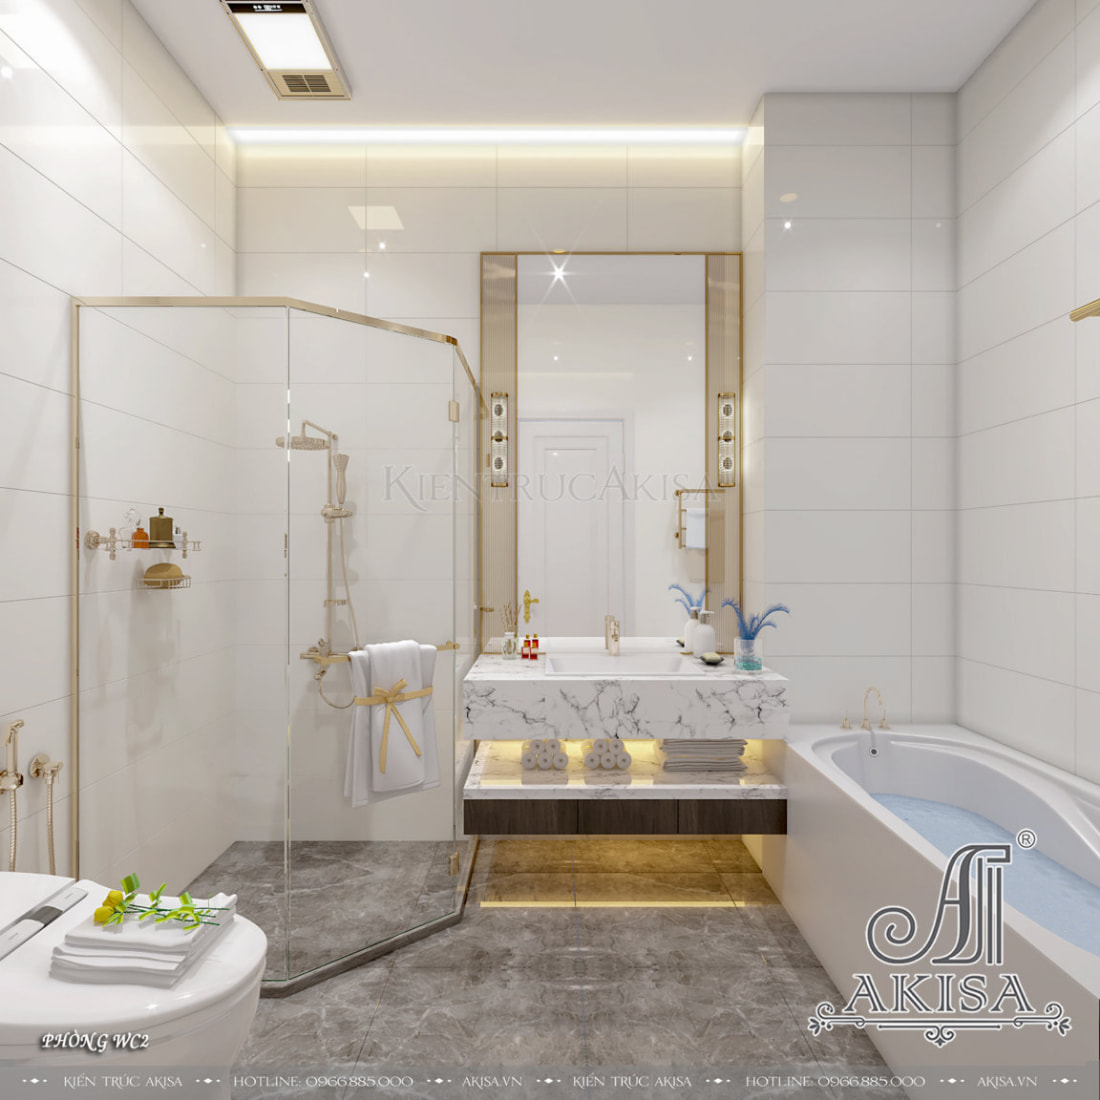 Phòng tắm phong cách hiện đại được trang bị đầy đủ tiện nghi tạo không gian thư giãn sau một ngày dài mệt mỏi. 